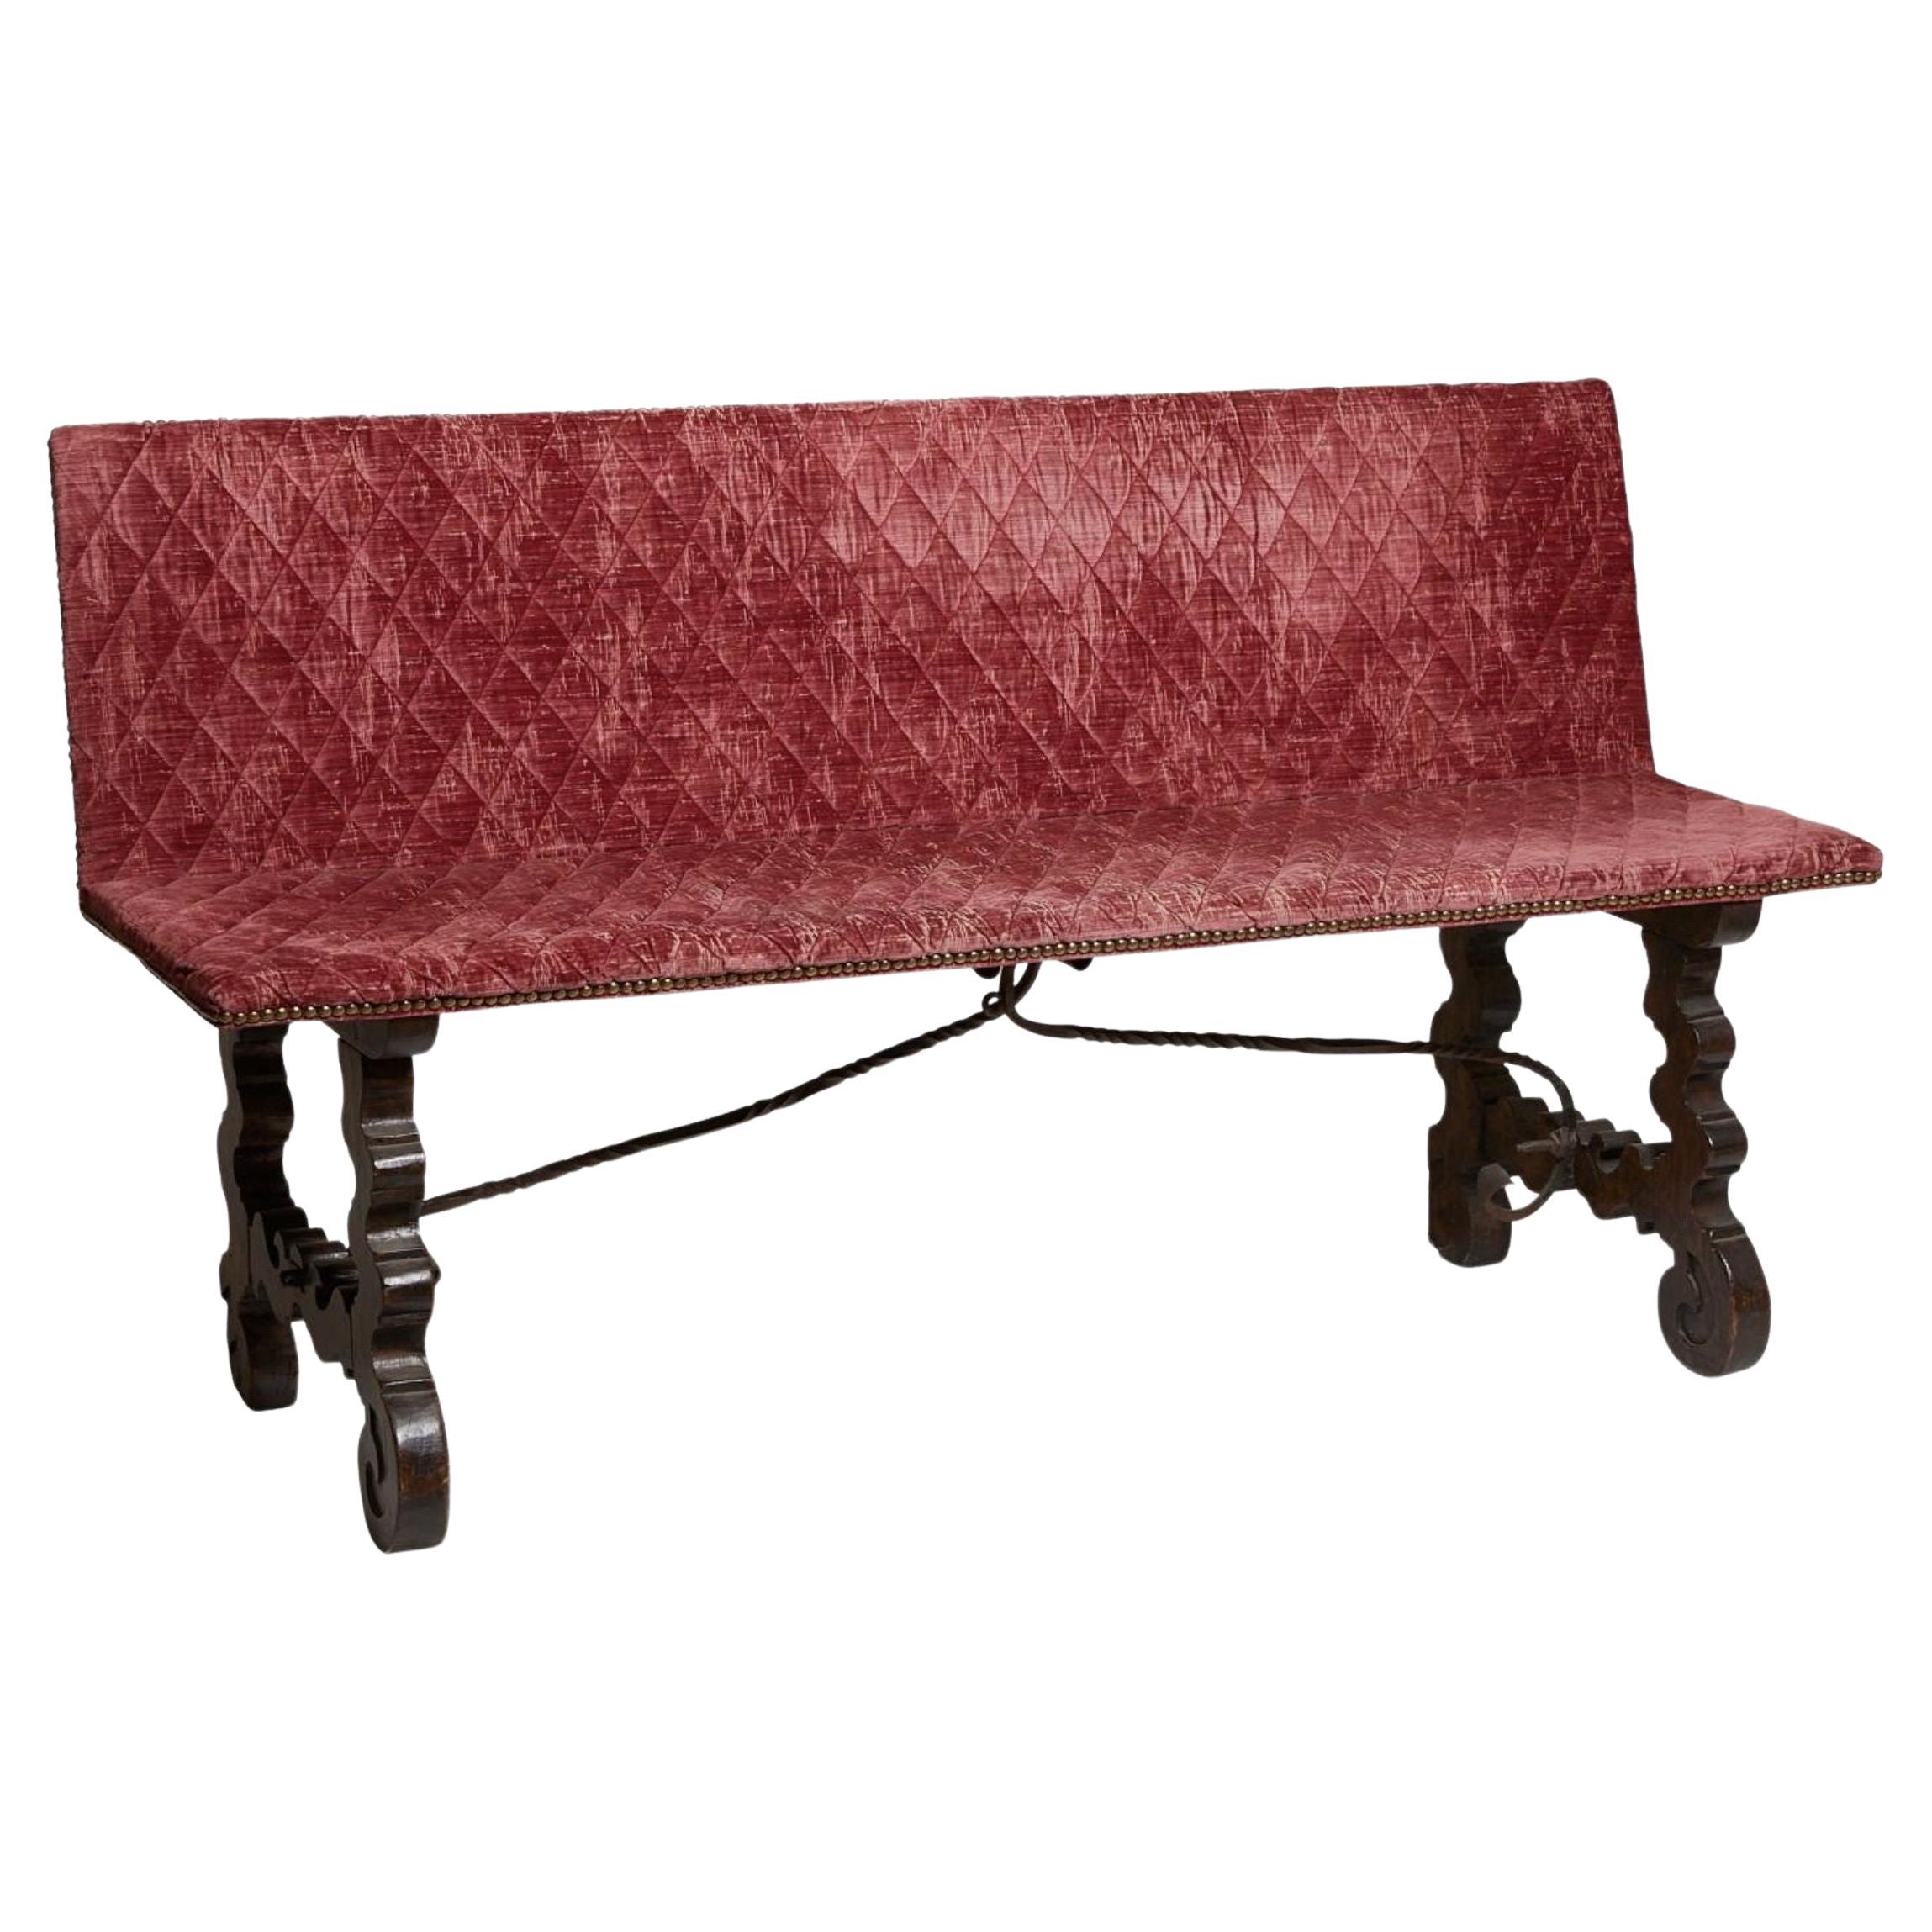 18th Century Spanish Baroque Style Velvet Bench For Sale